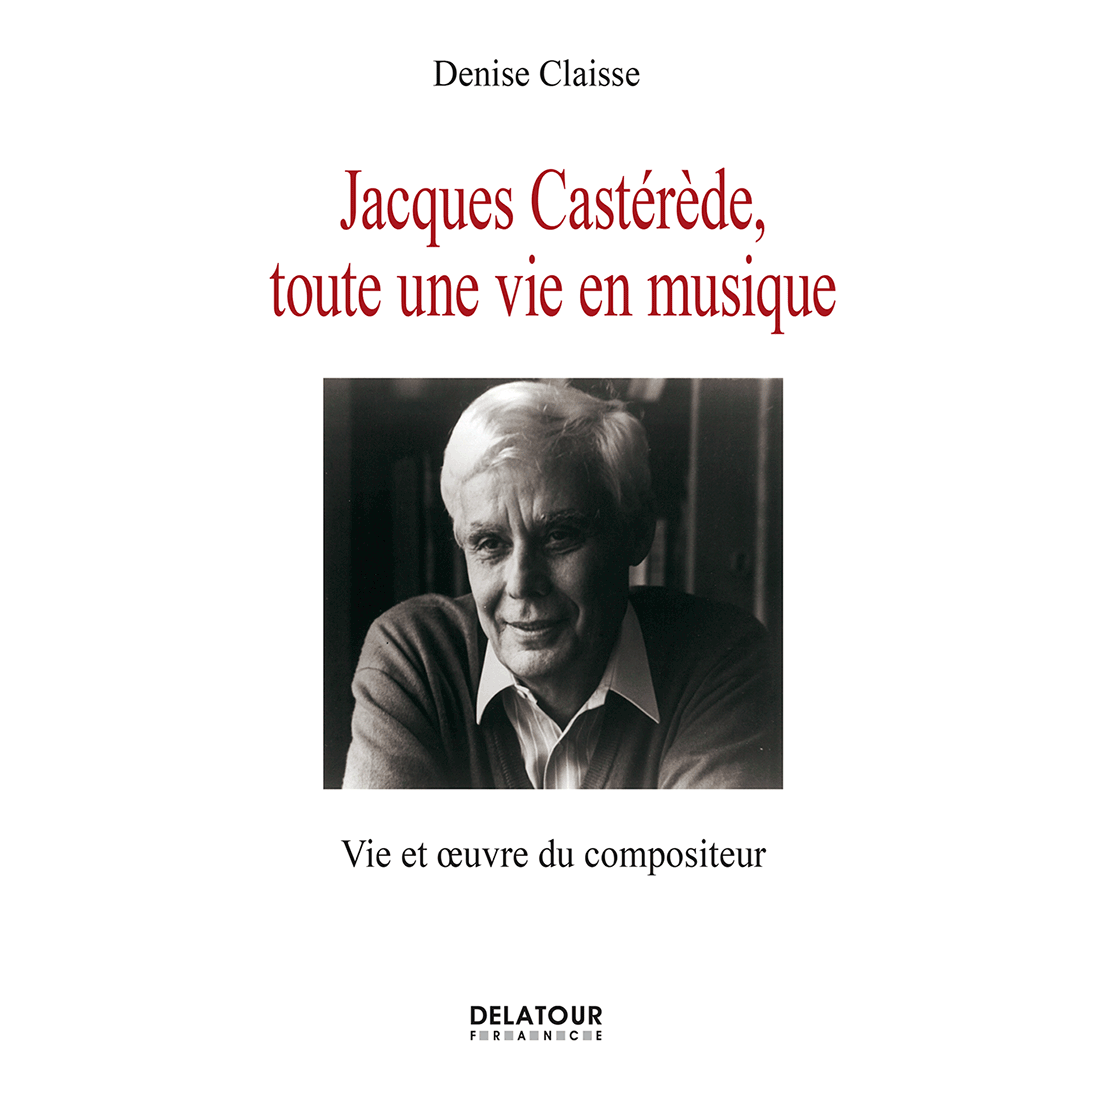 Jacques Castérède, toute une vie en musique